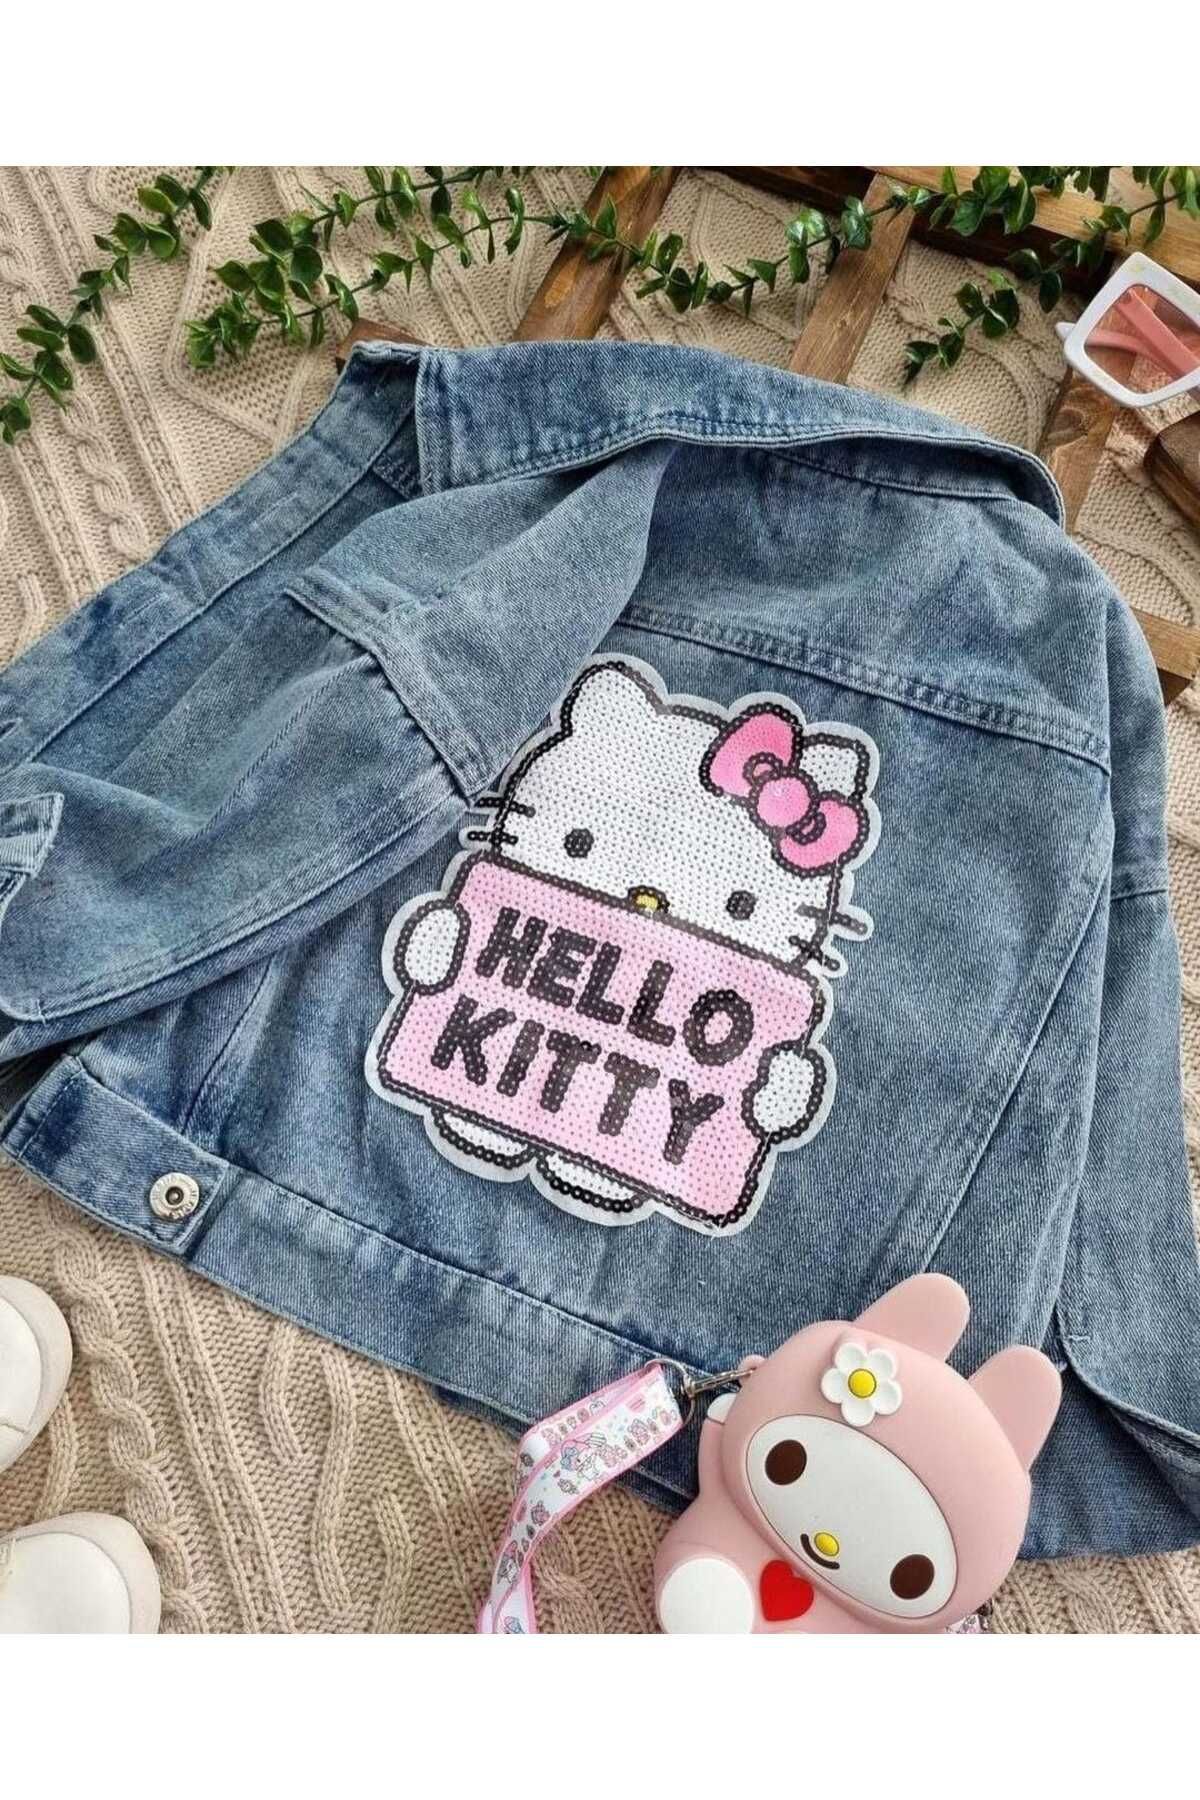 cengokıds Hello Kitty Kız Çocuk Kot Ceket